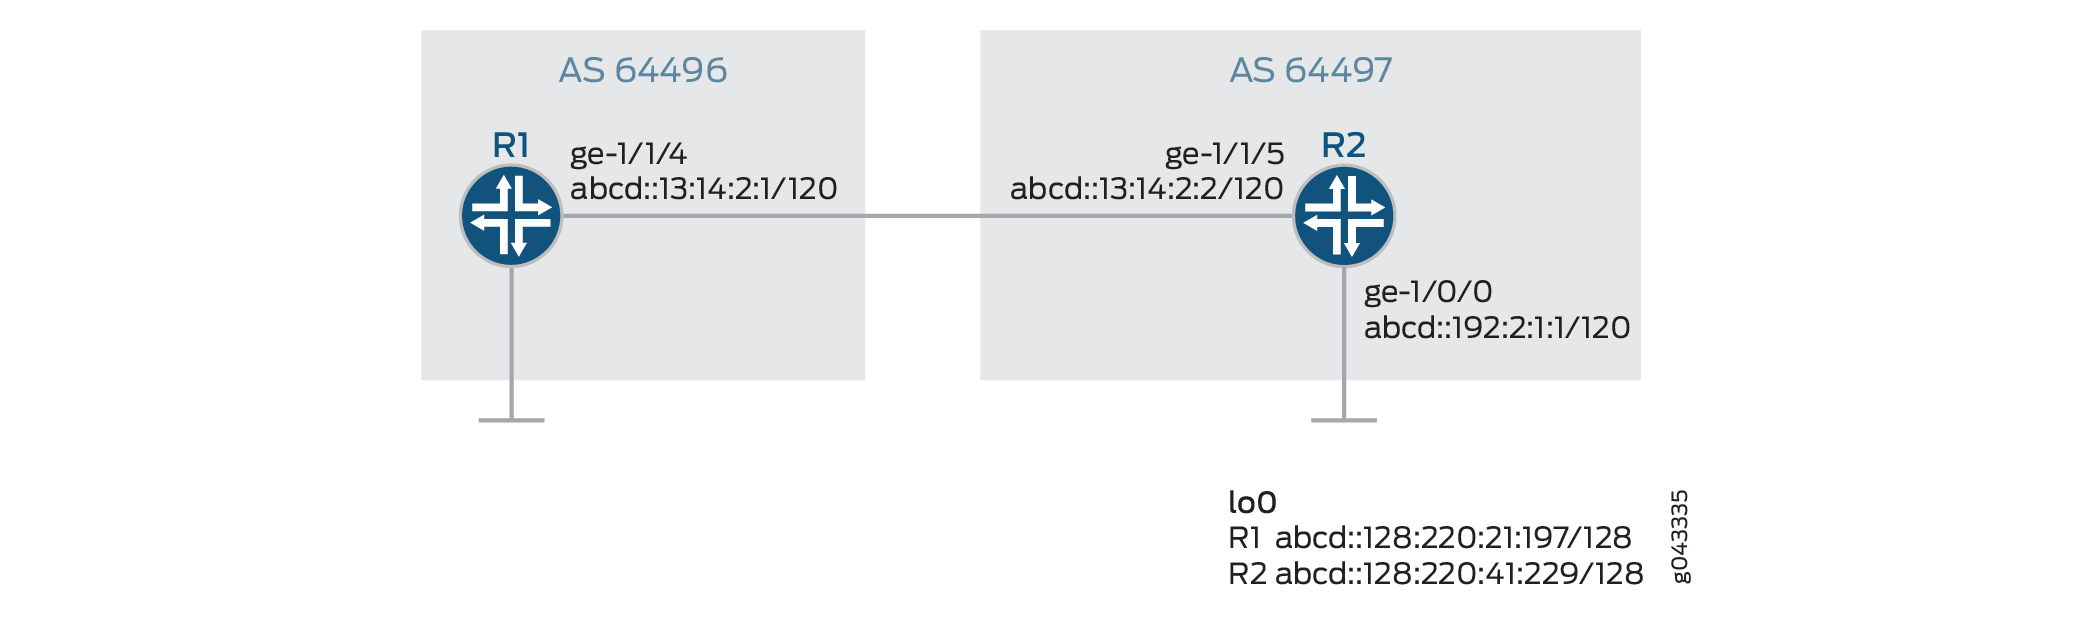 Konfigurieren von BGP für IPv6-Datenflussrouten